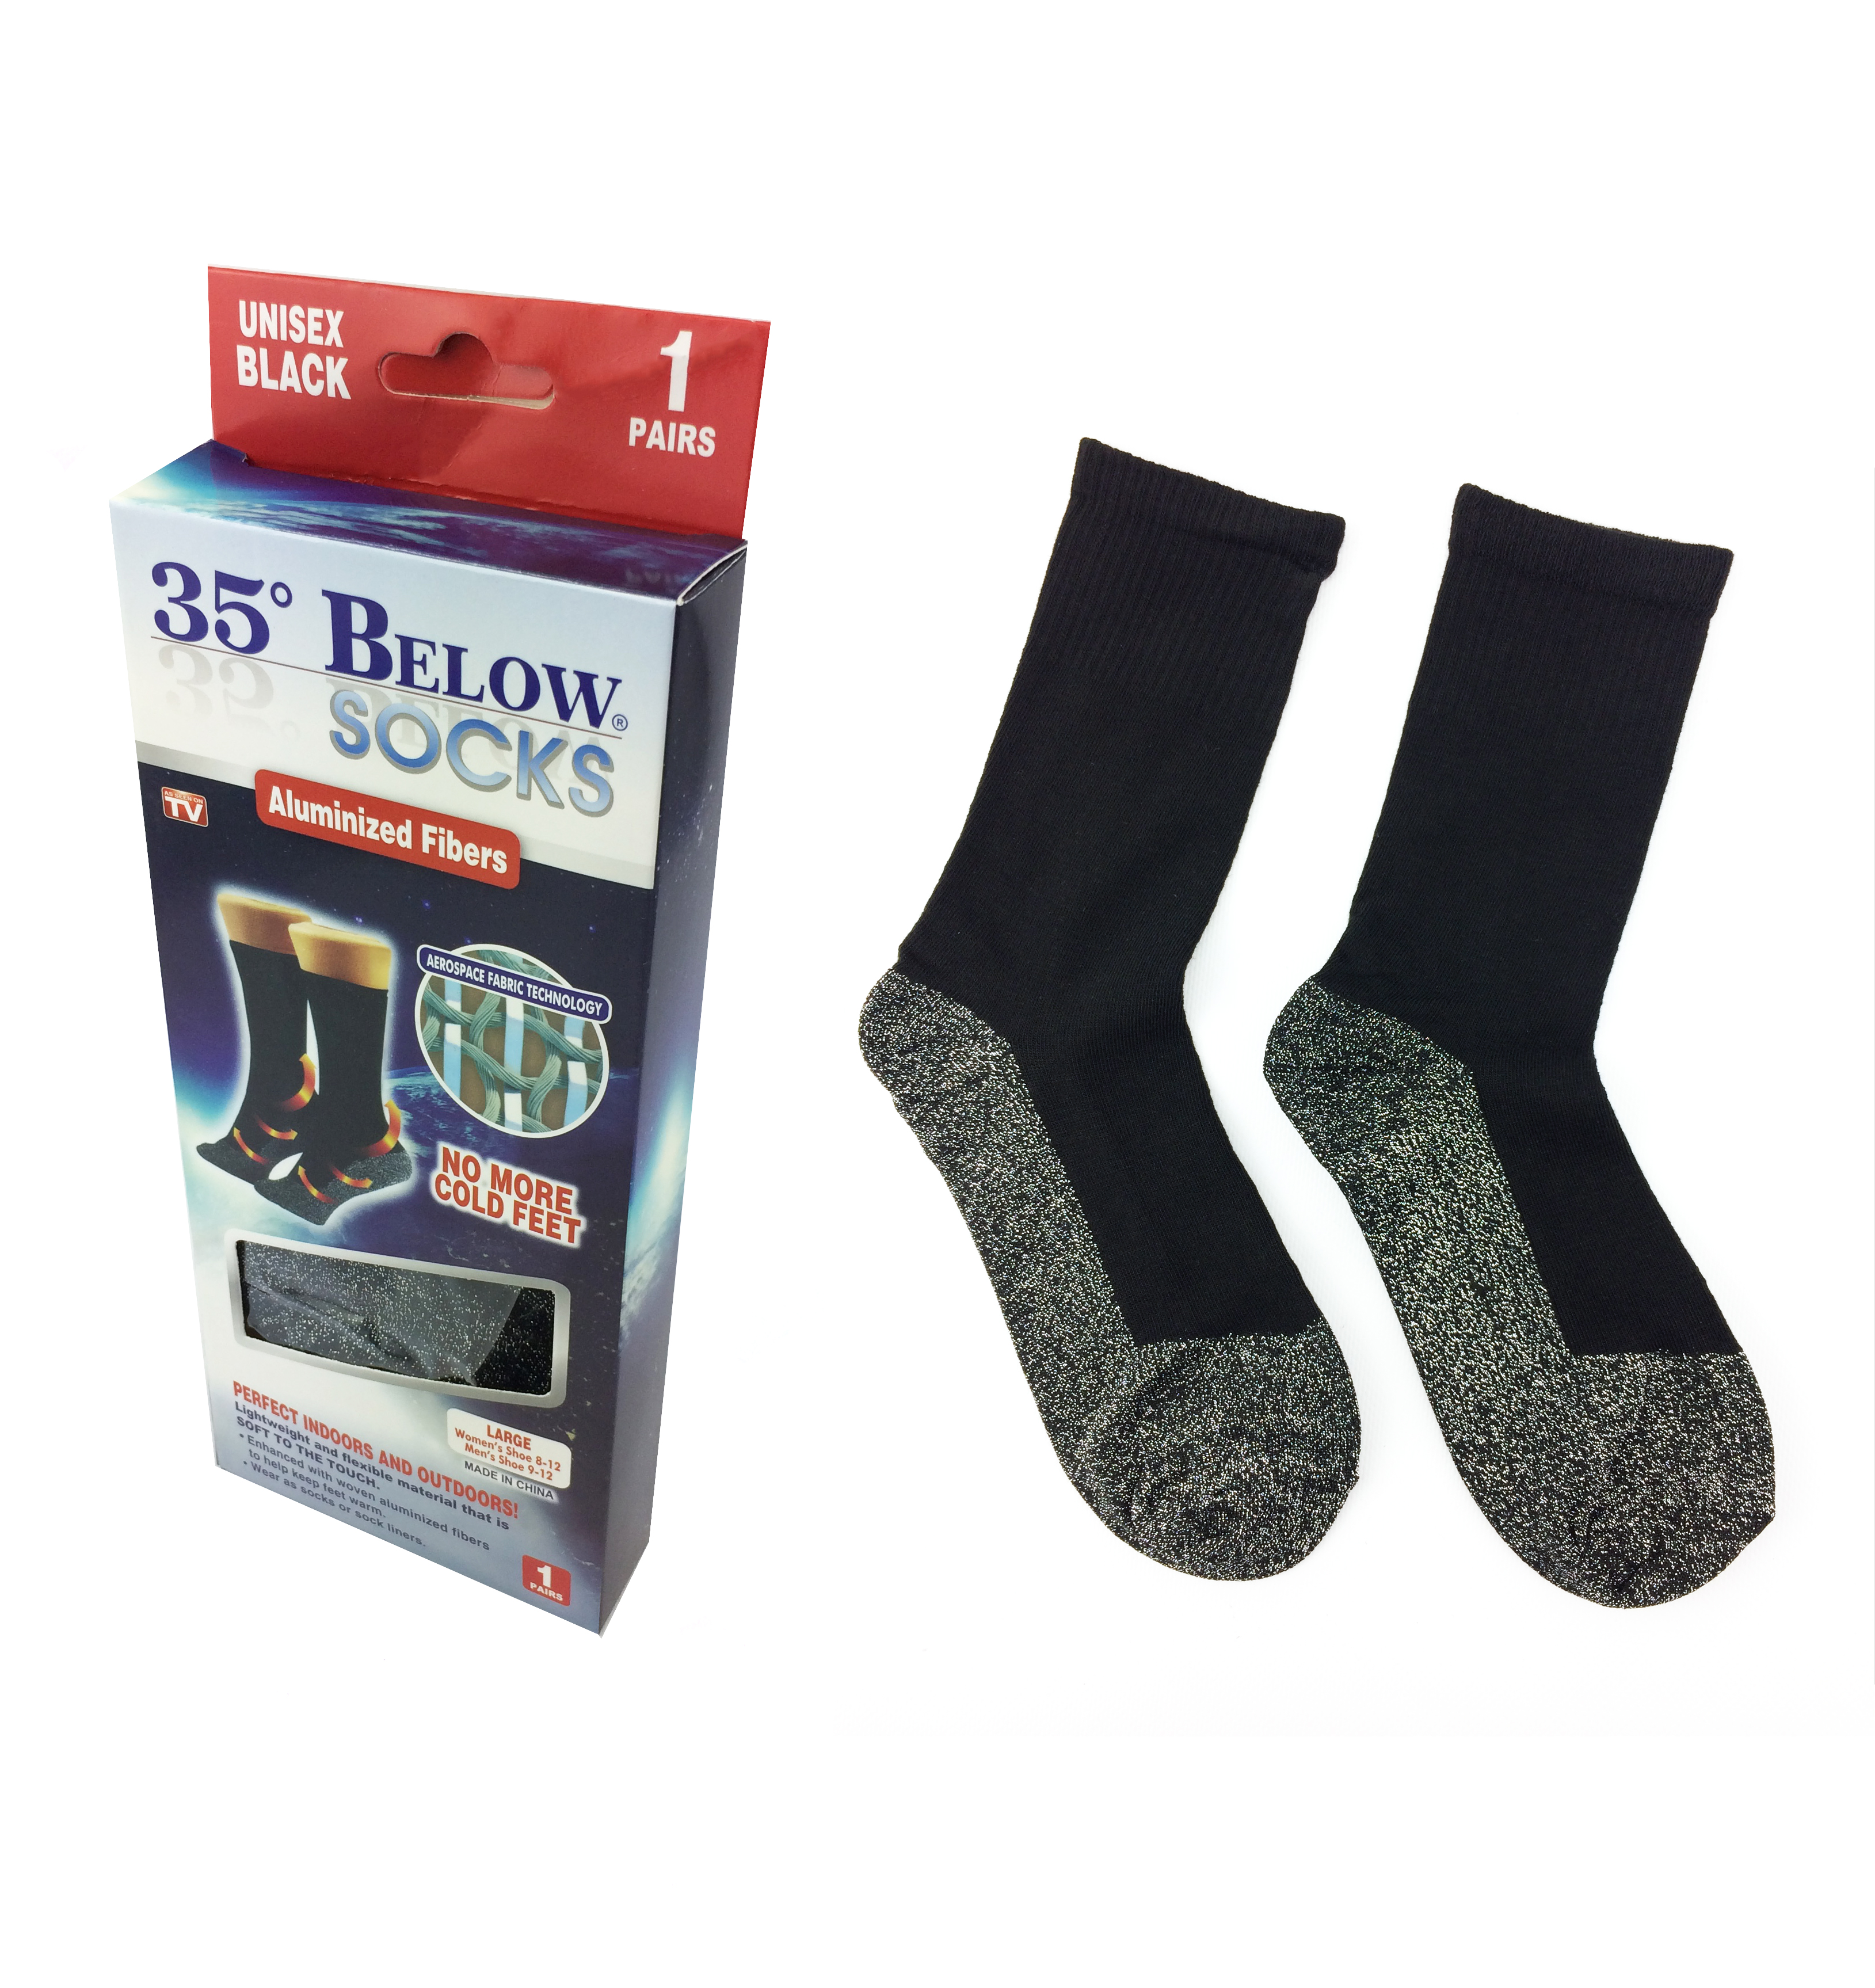 Термоноски Below socks оптом